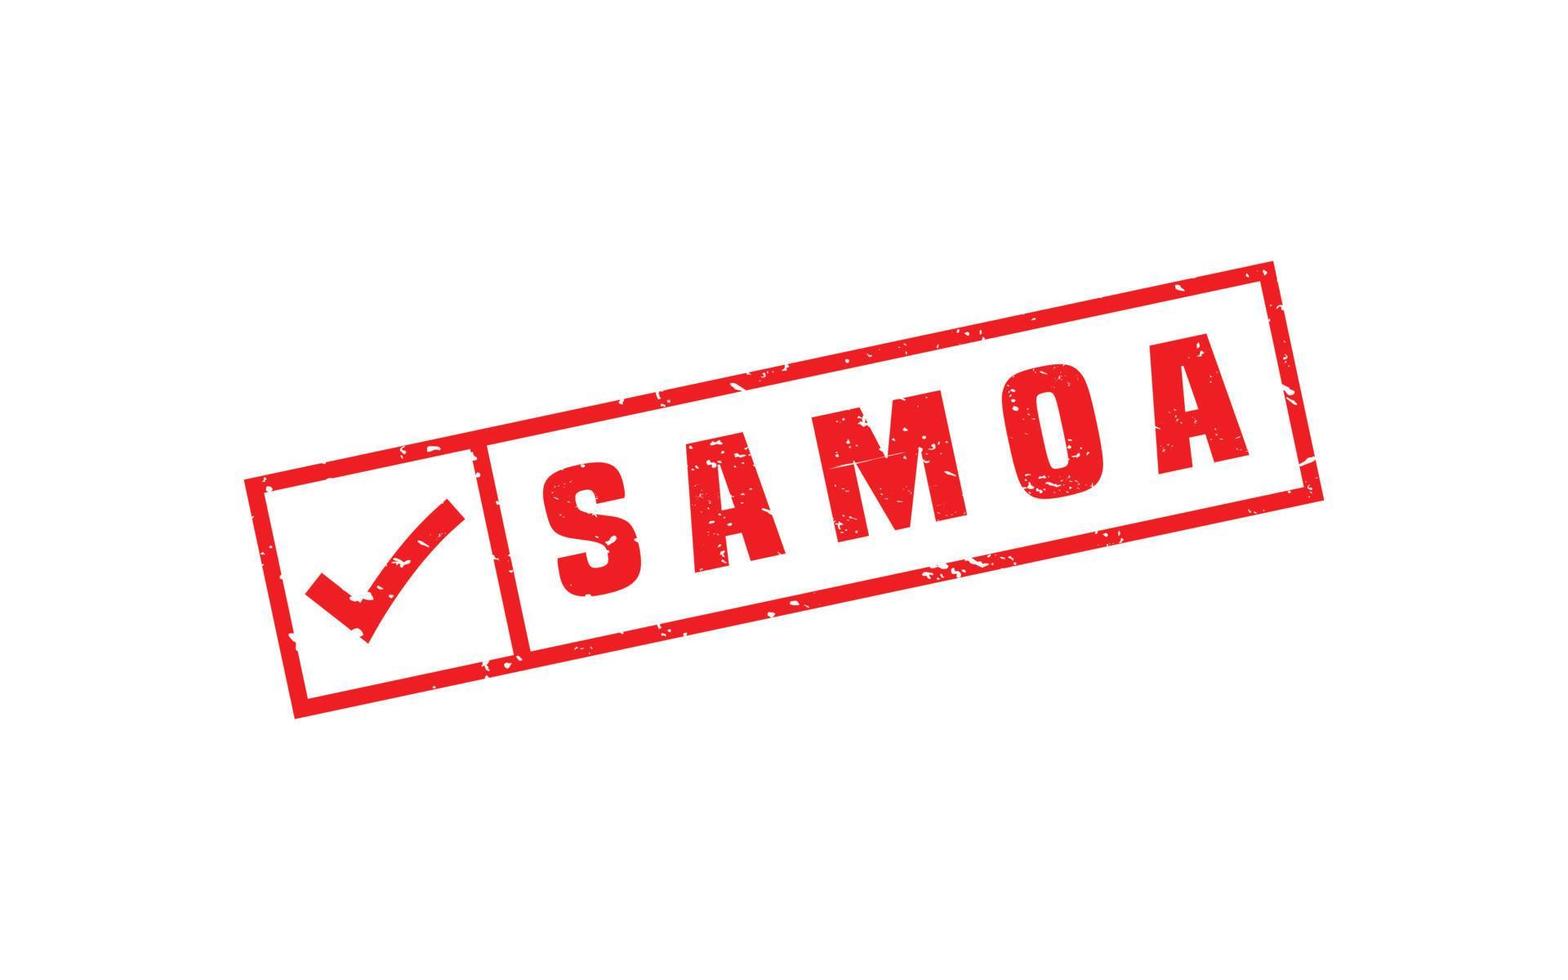 Samoa Briefmarke Gummi mit Grunge Stil auf Weiß Hintergrund vektor